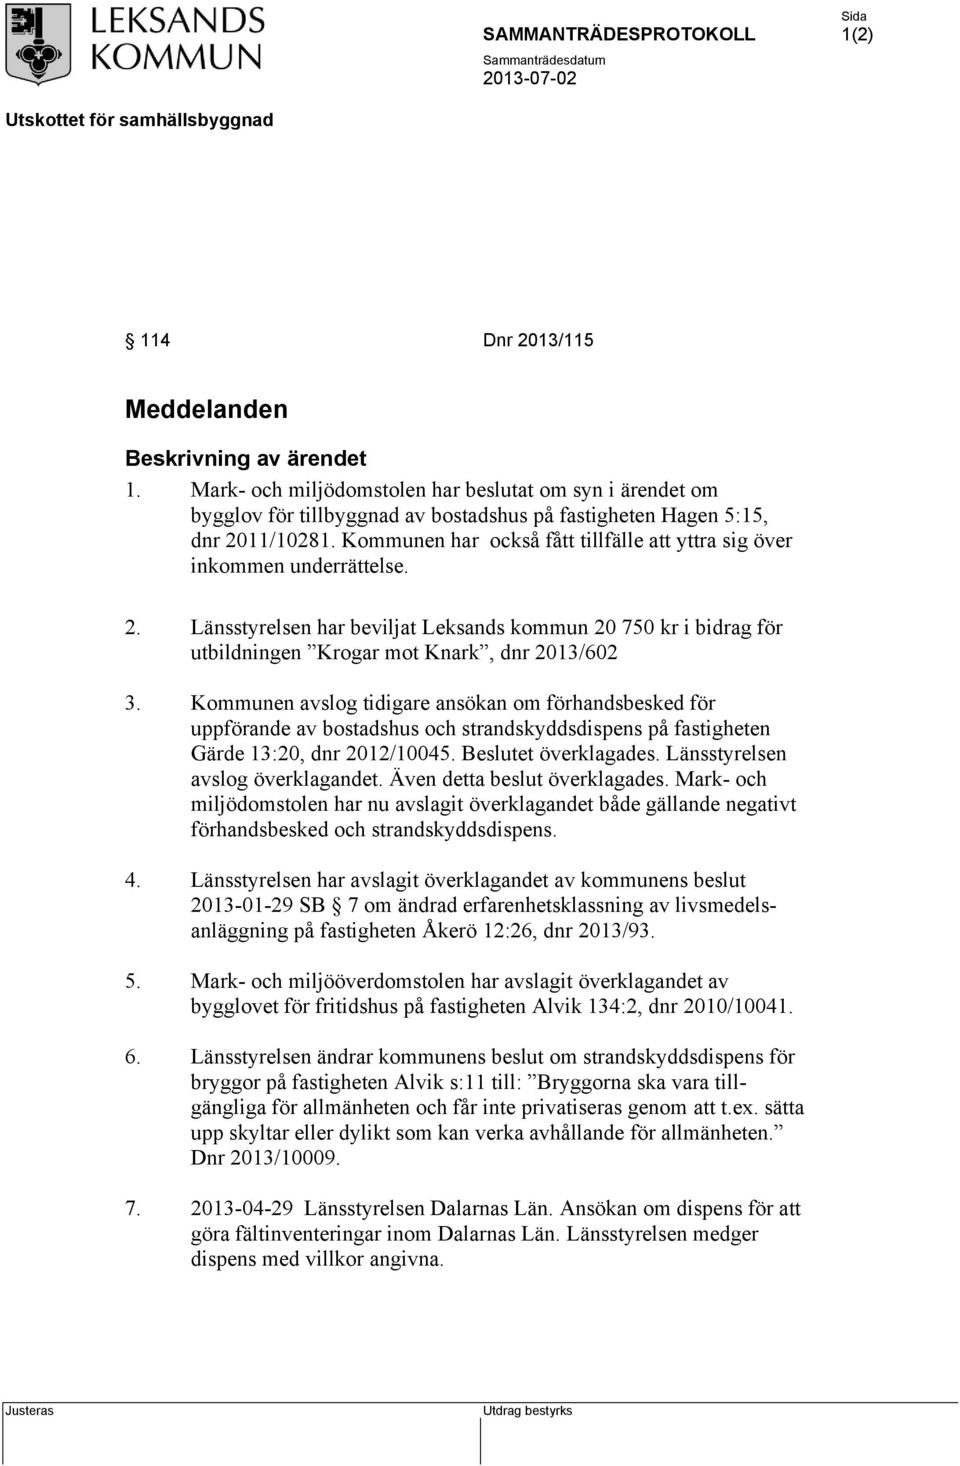 Kommunen avslog tidigare ansökan om förhandsbesked för uppförande av bostadshus och strandskyddsdispens på fastigheten Gärde 13:20, dnr 2012/10045. Beslutet överklagades.